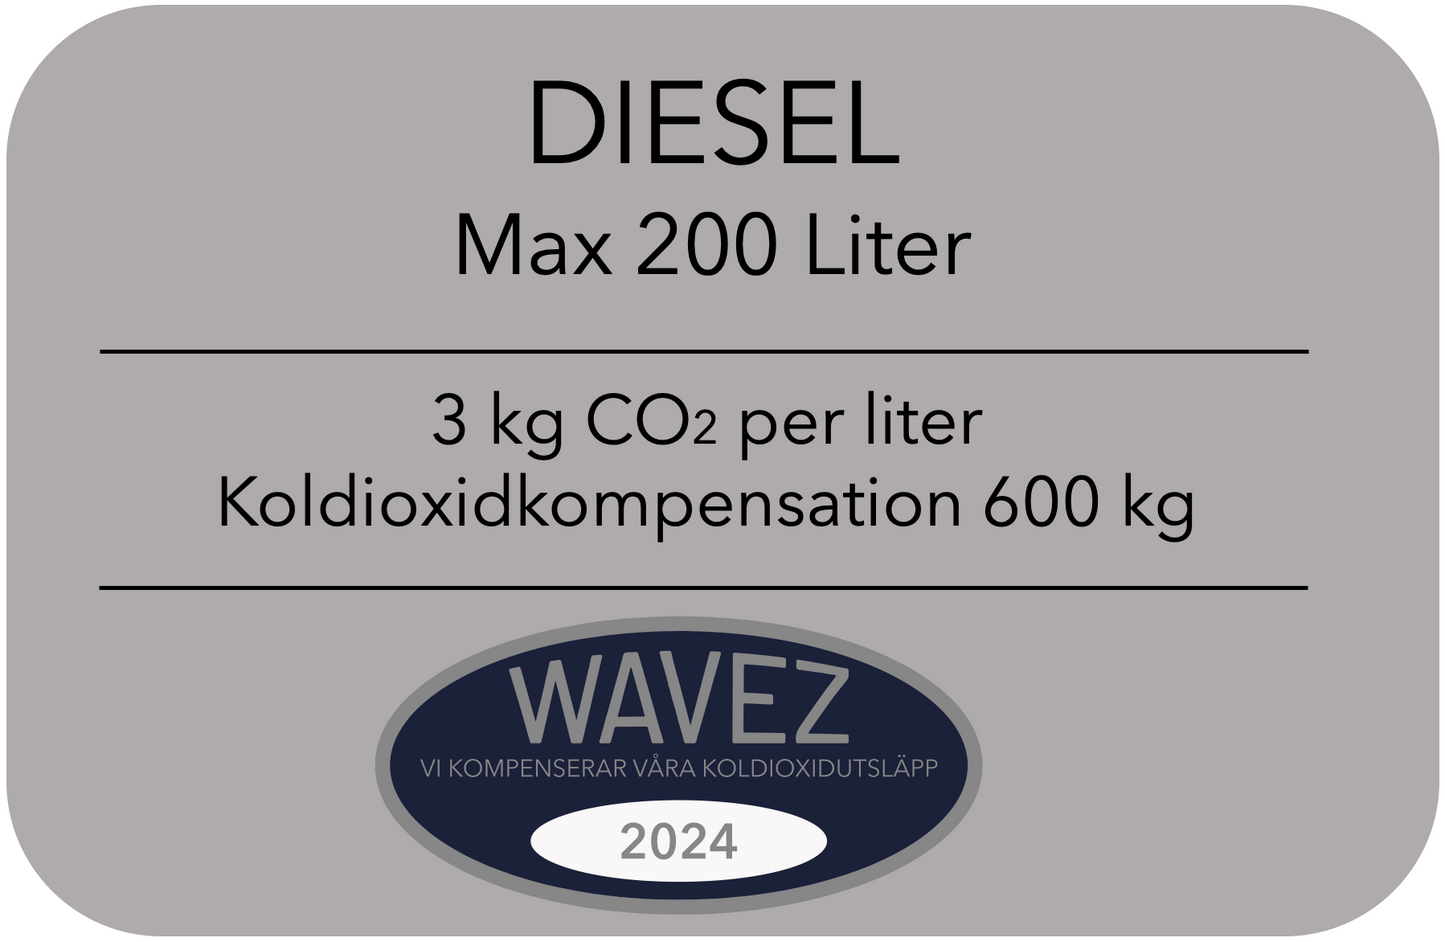 Koldioxidkompensation 200 Liter Diesel